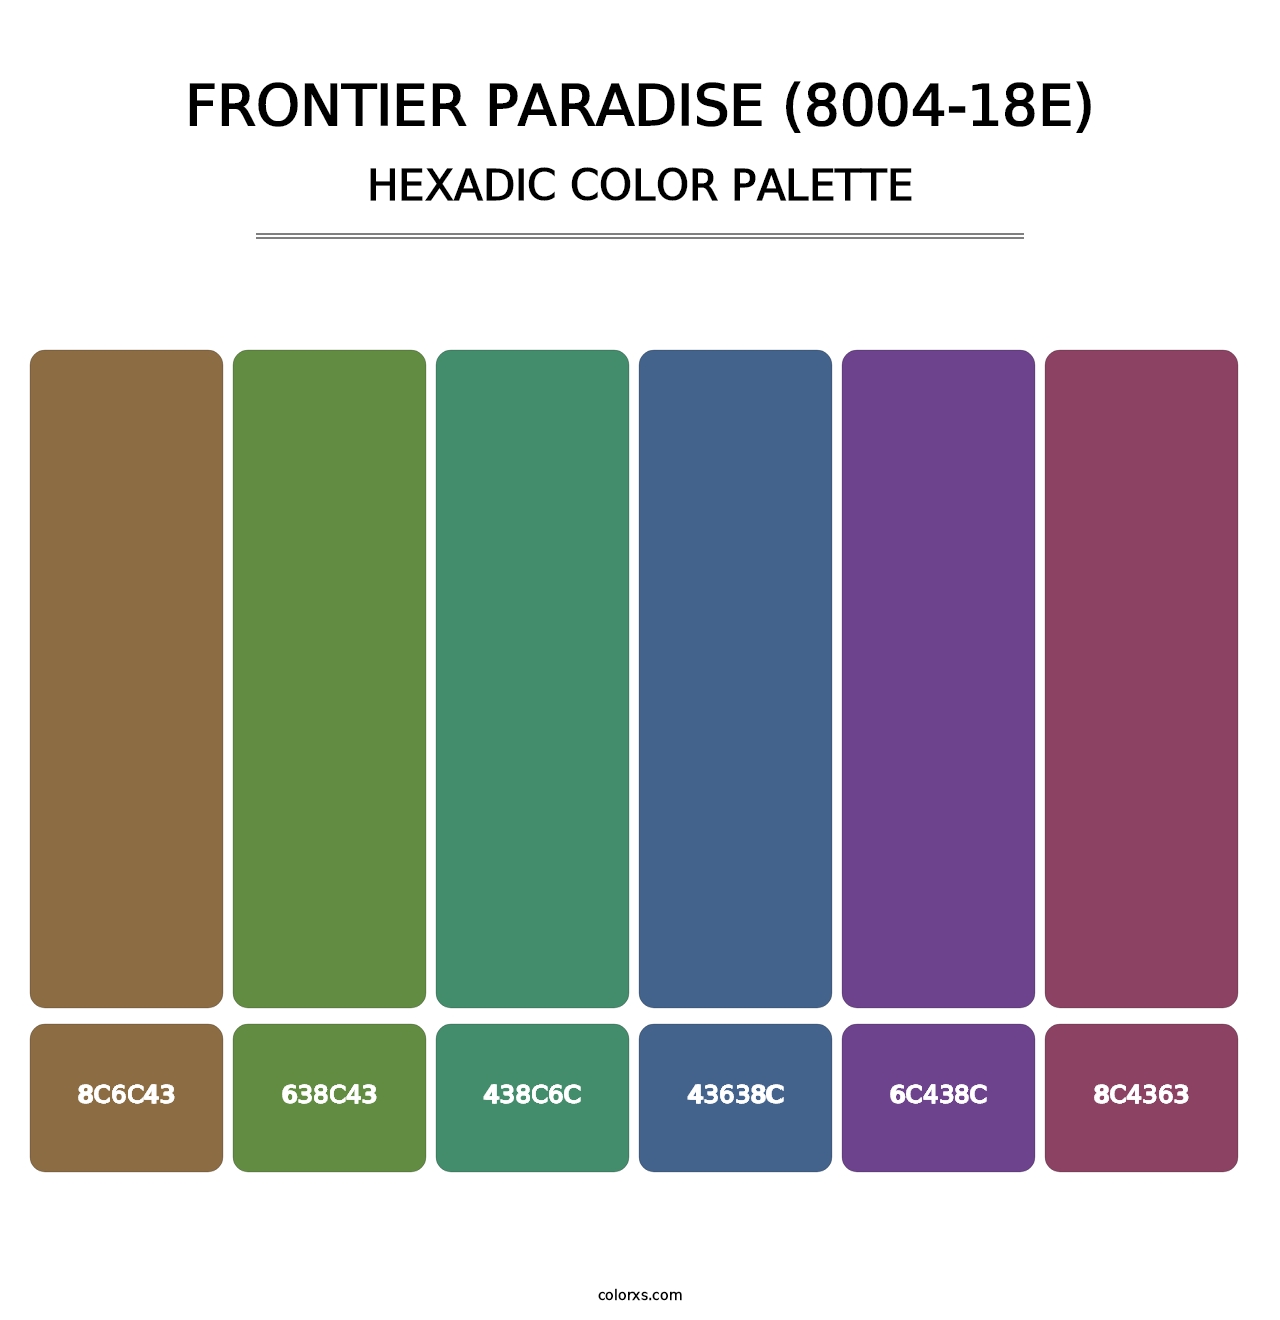 Frontier Paradise (8004-18E) - Hexadic Color Palette